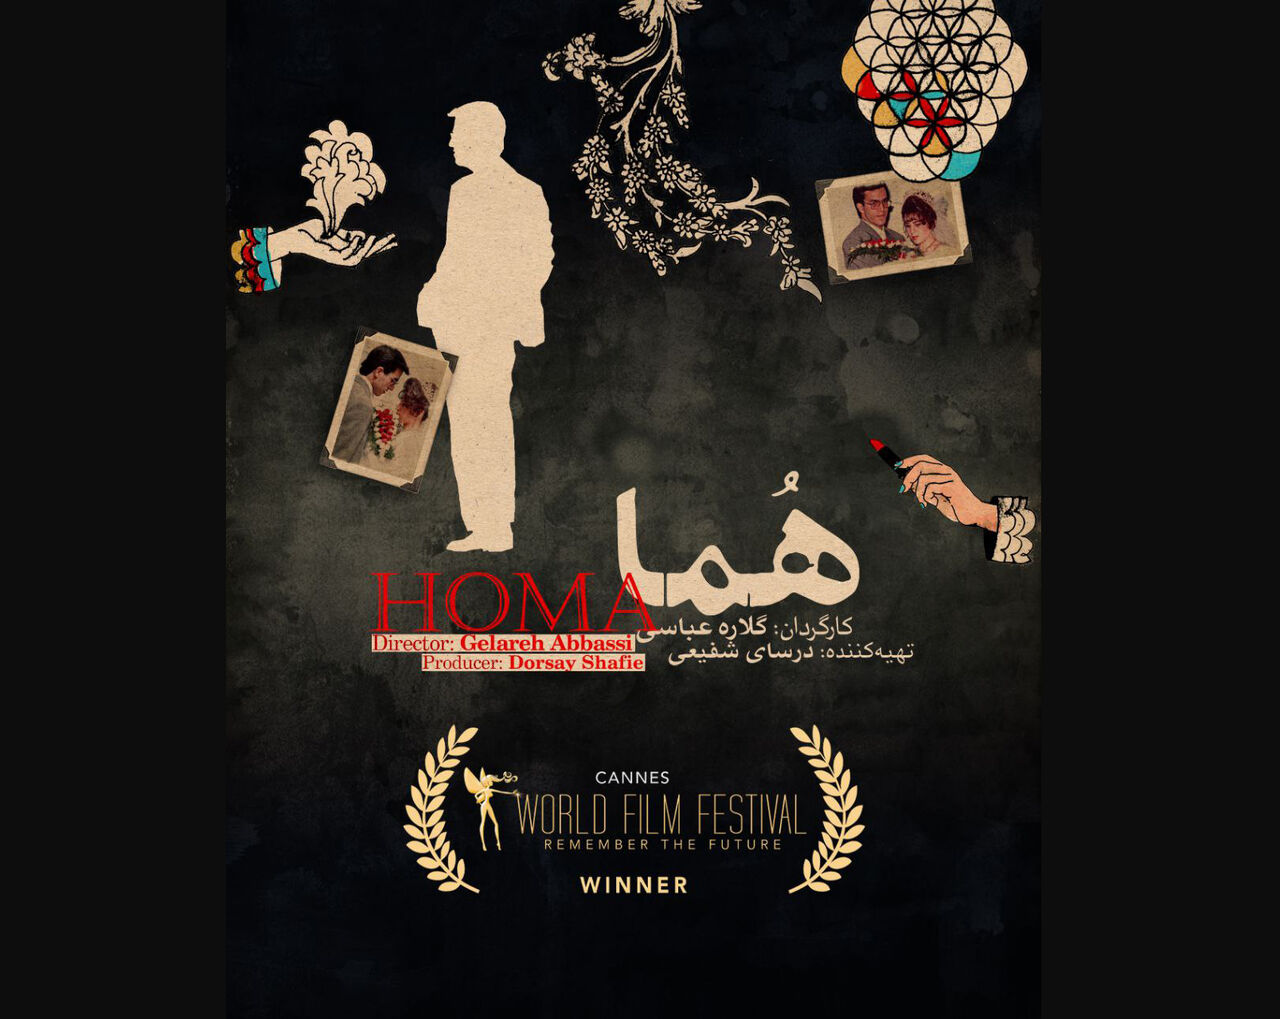 الفيلم الوثائقي "هما" يحصل على جائزة أفضل إخراج في مهرجان "كان" الفرنسي